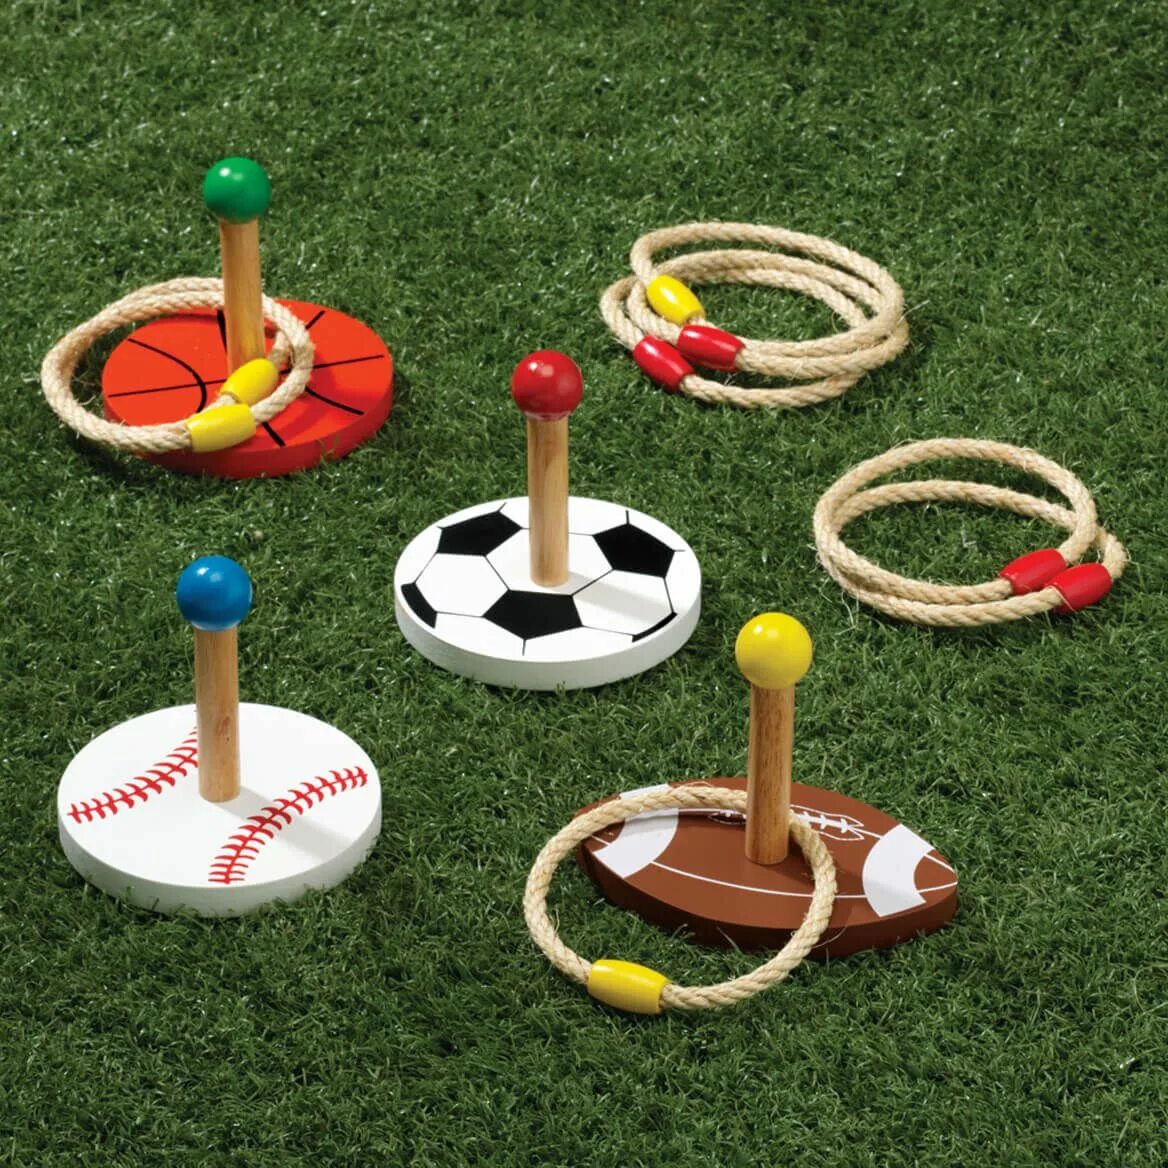 Ring Toss игра. Спортивные игрушки. Спортивный инвентарь для садика. Спортинвентарь для детей. На площадке для игры есть